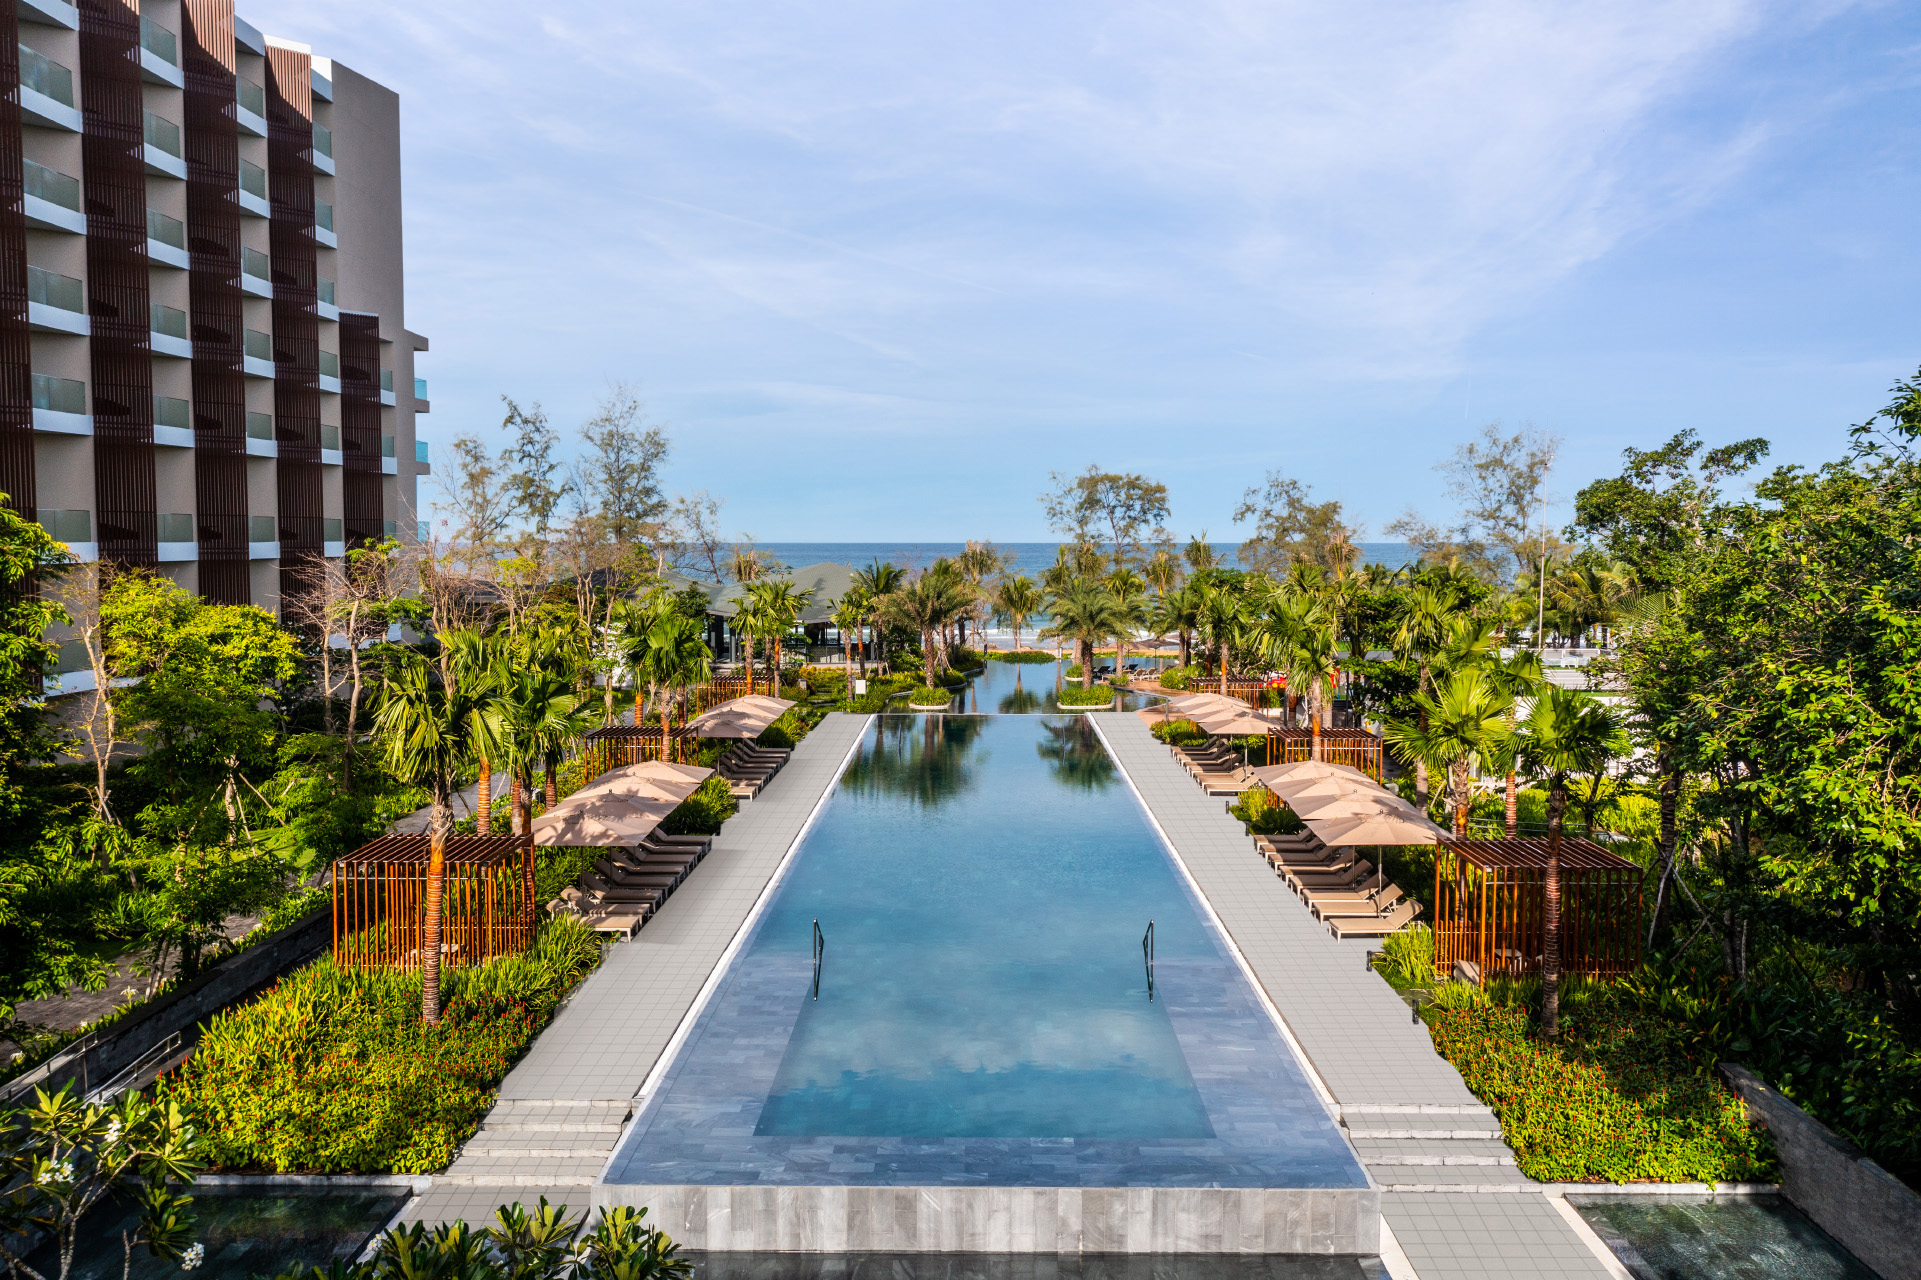 Ra mắt khu nghỉ dưỡng Crowne Plaza Phu Quoc Starbay